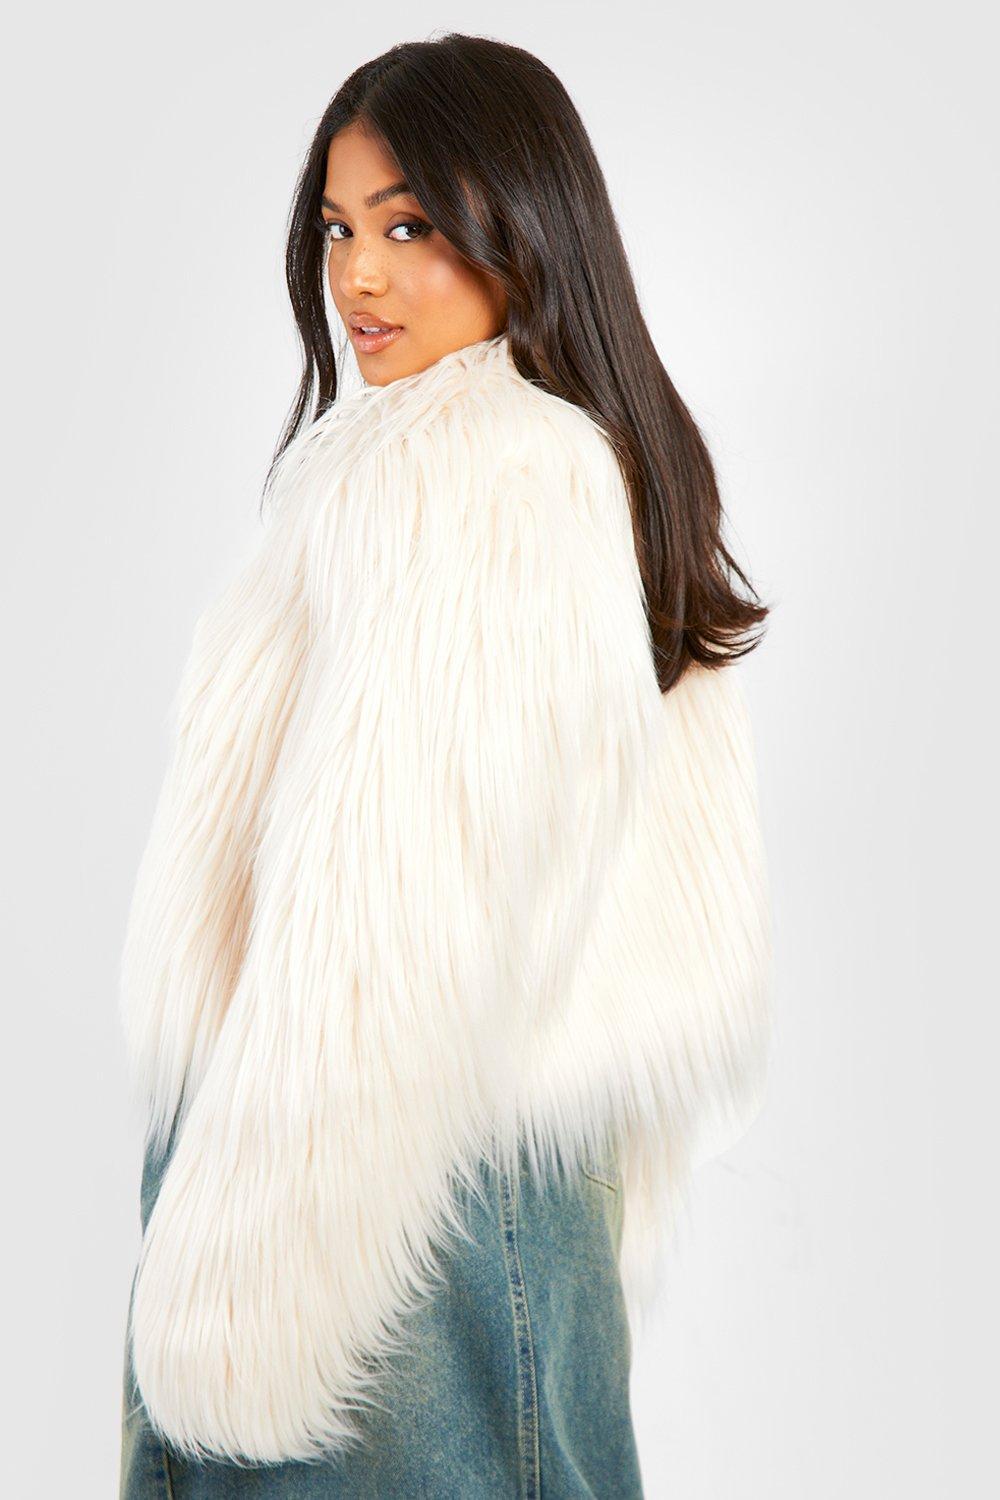 White Faux Fur Jacket, White Shaggy Faux Fur Coat